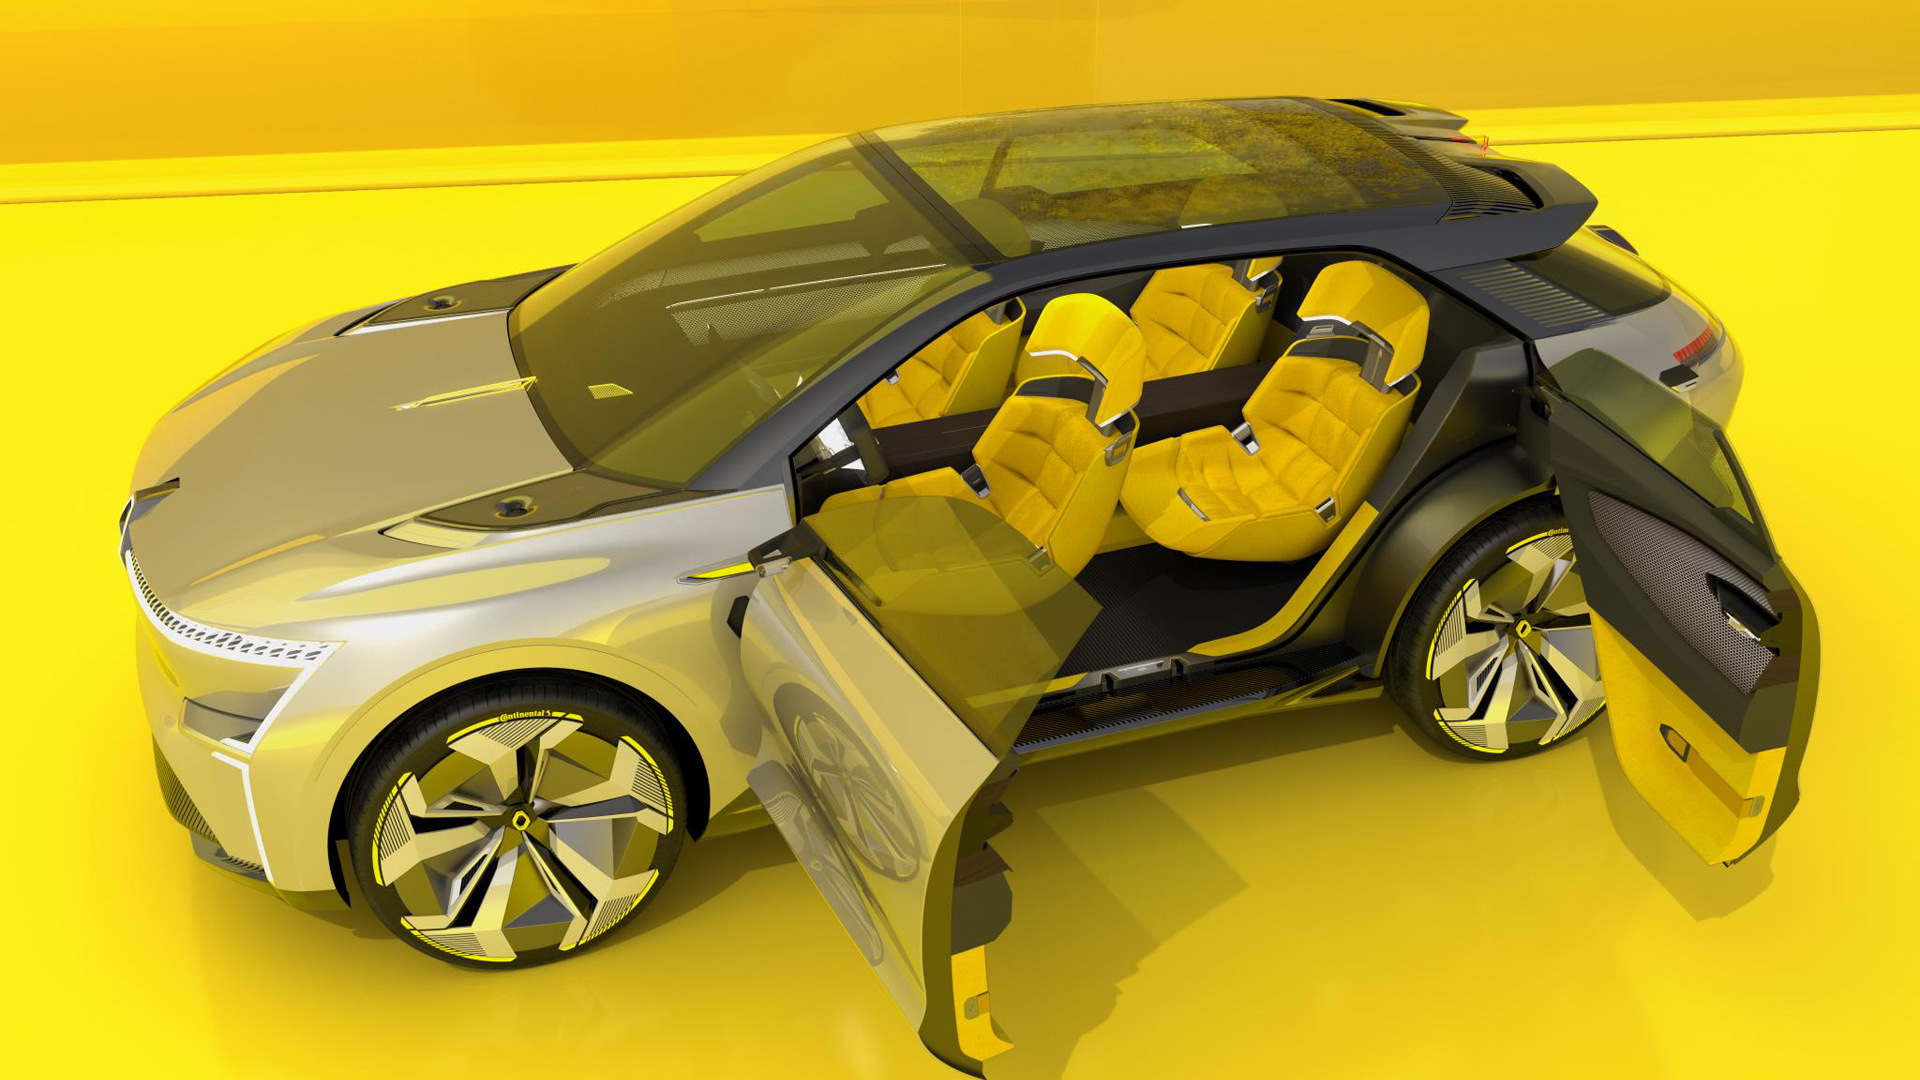 Renault Morphoz concept